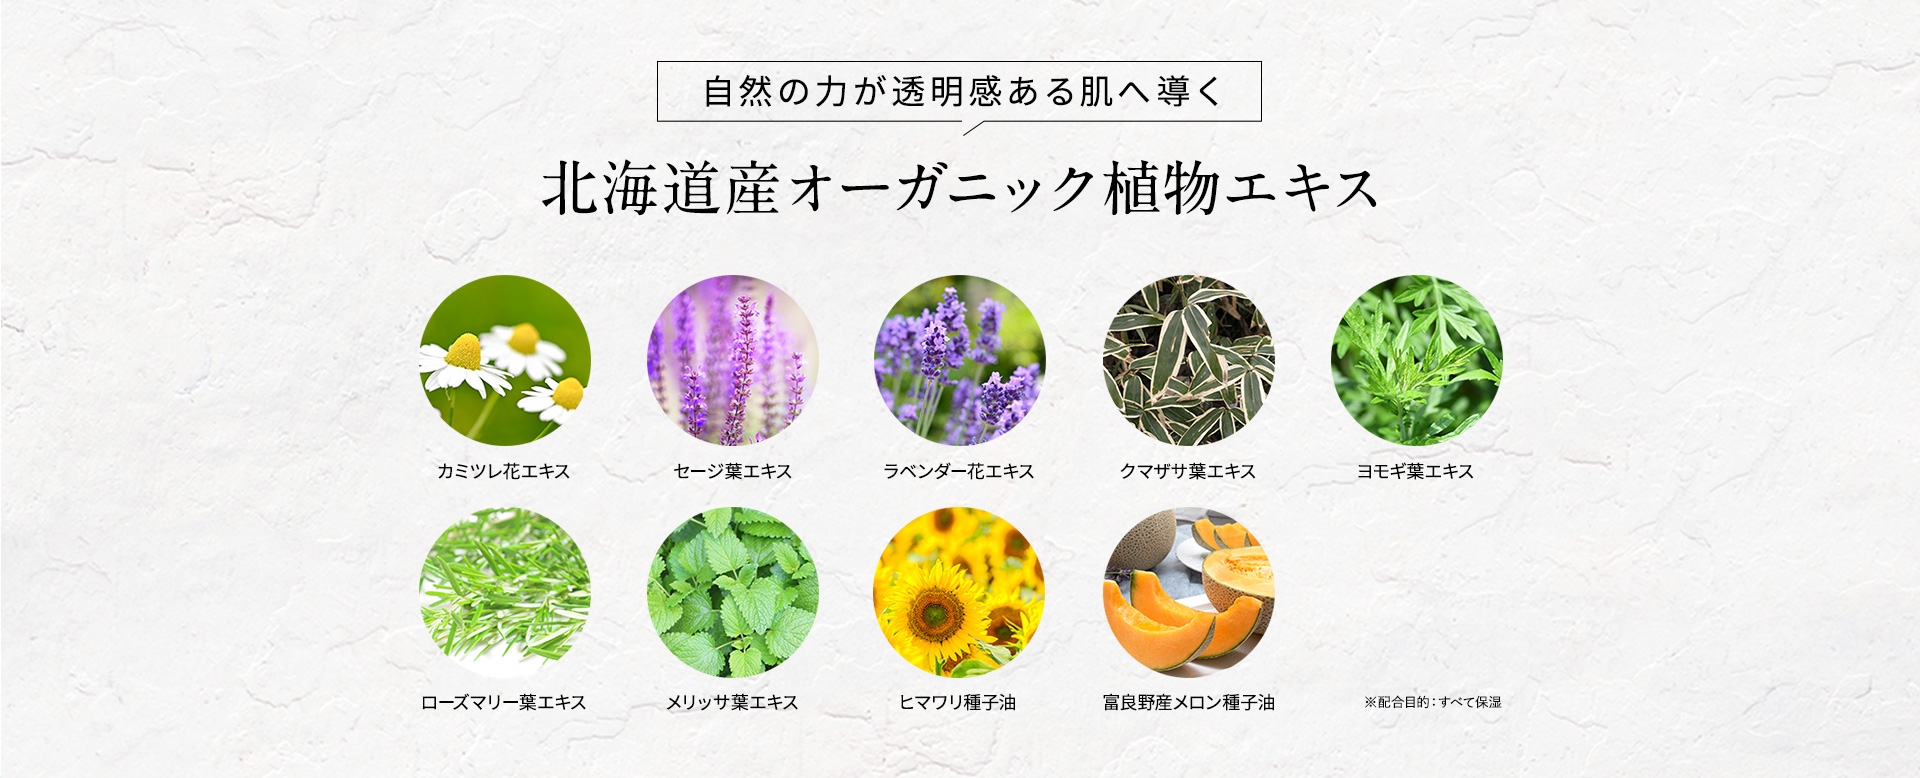 自然の力が透明感ある肌へ導く北海道産オーガニック植物エキス